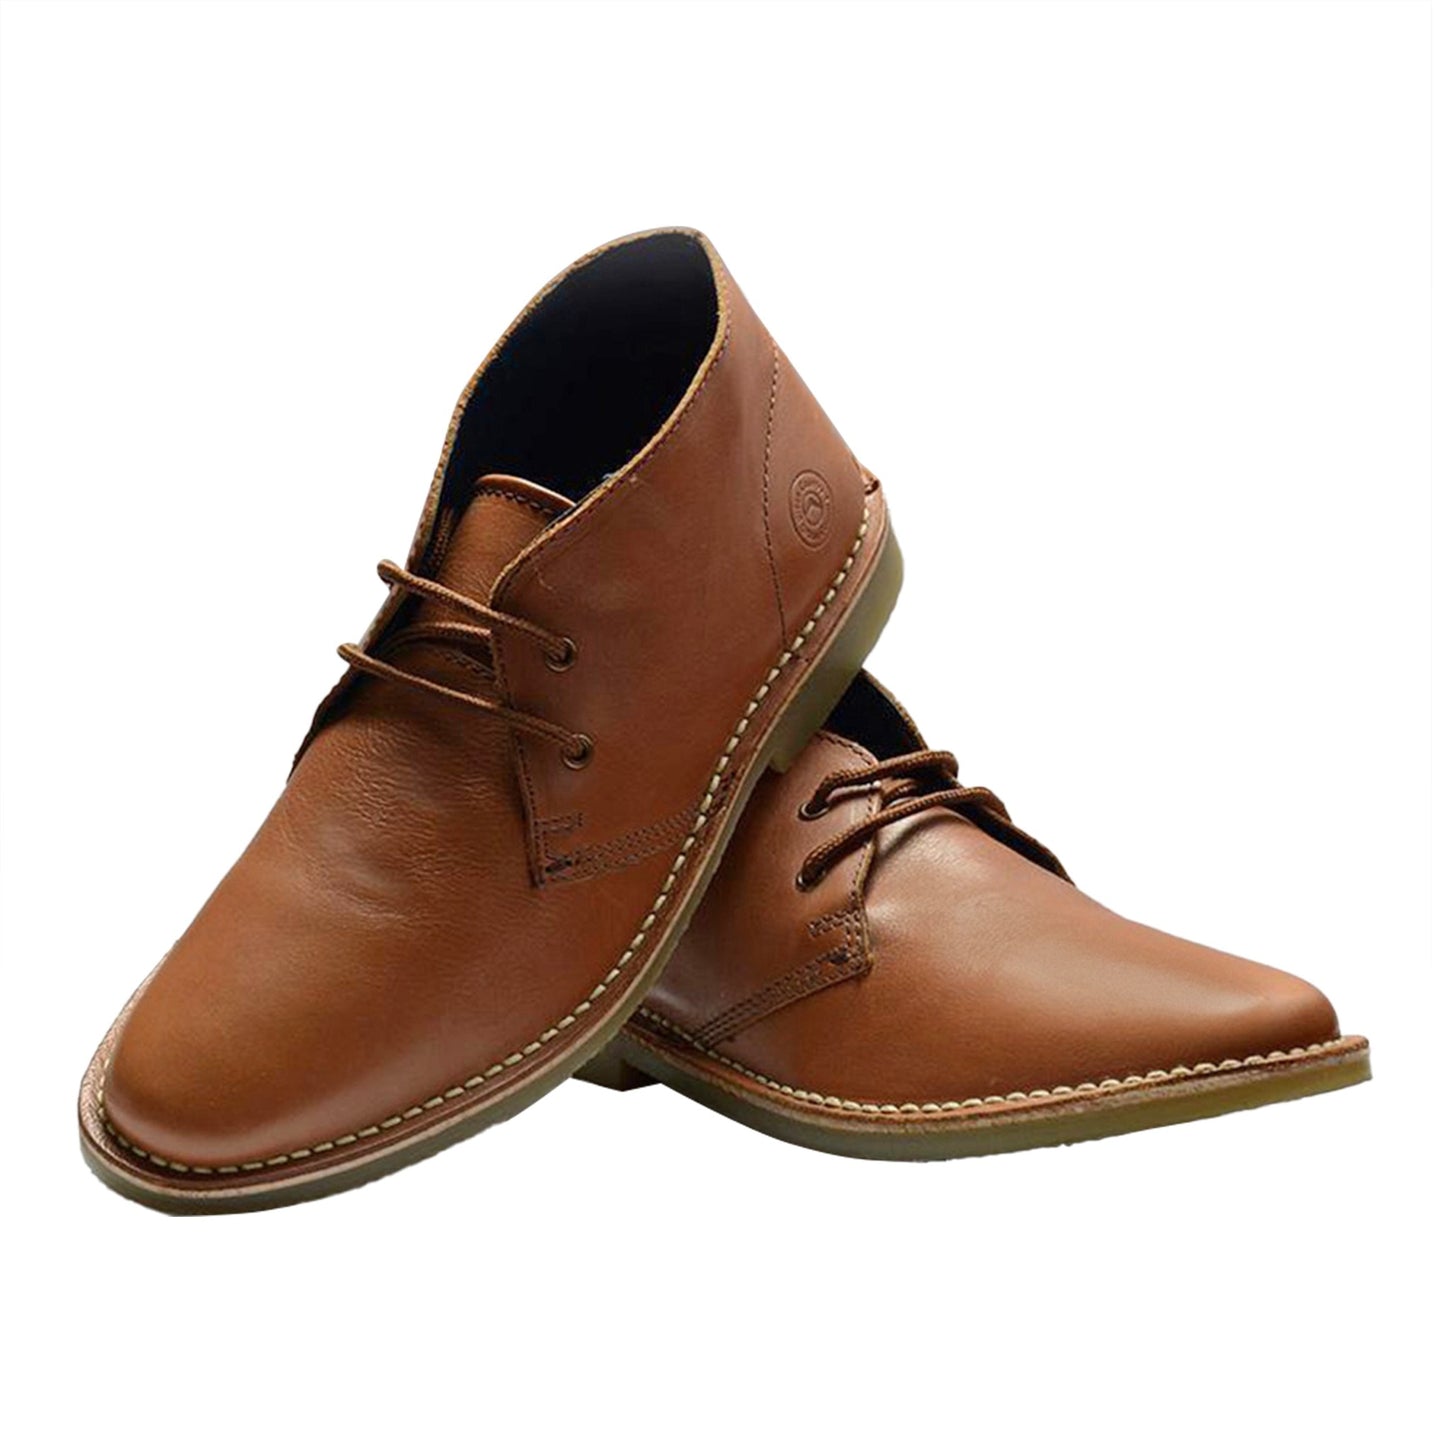 Men Leather Ankle Length Desert Boots ǀ DESERT 4785